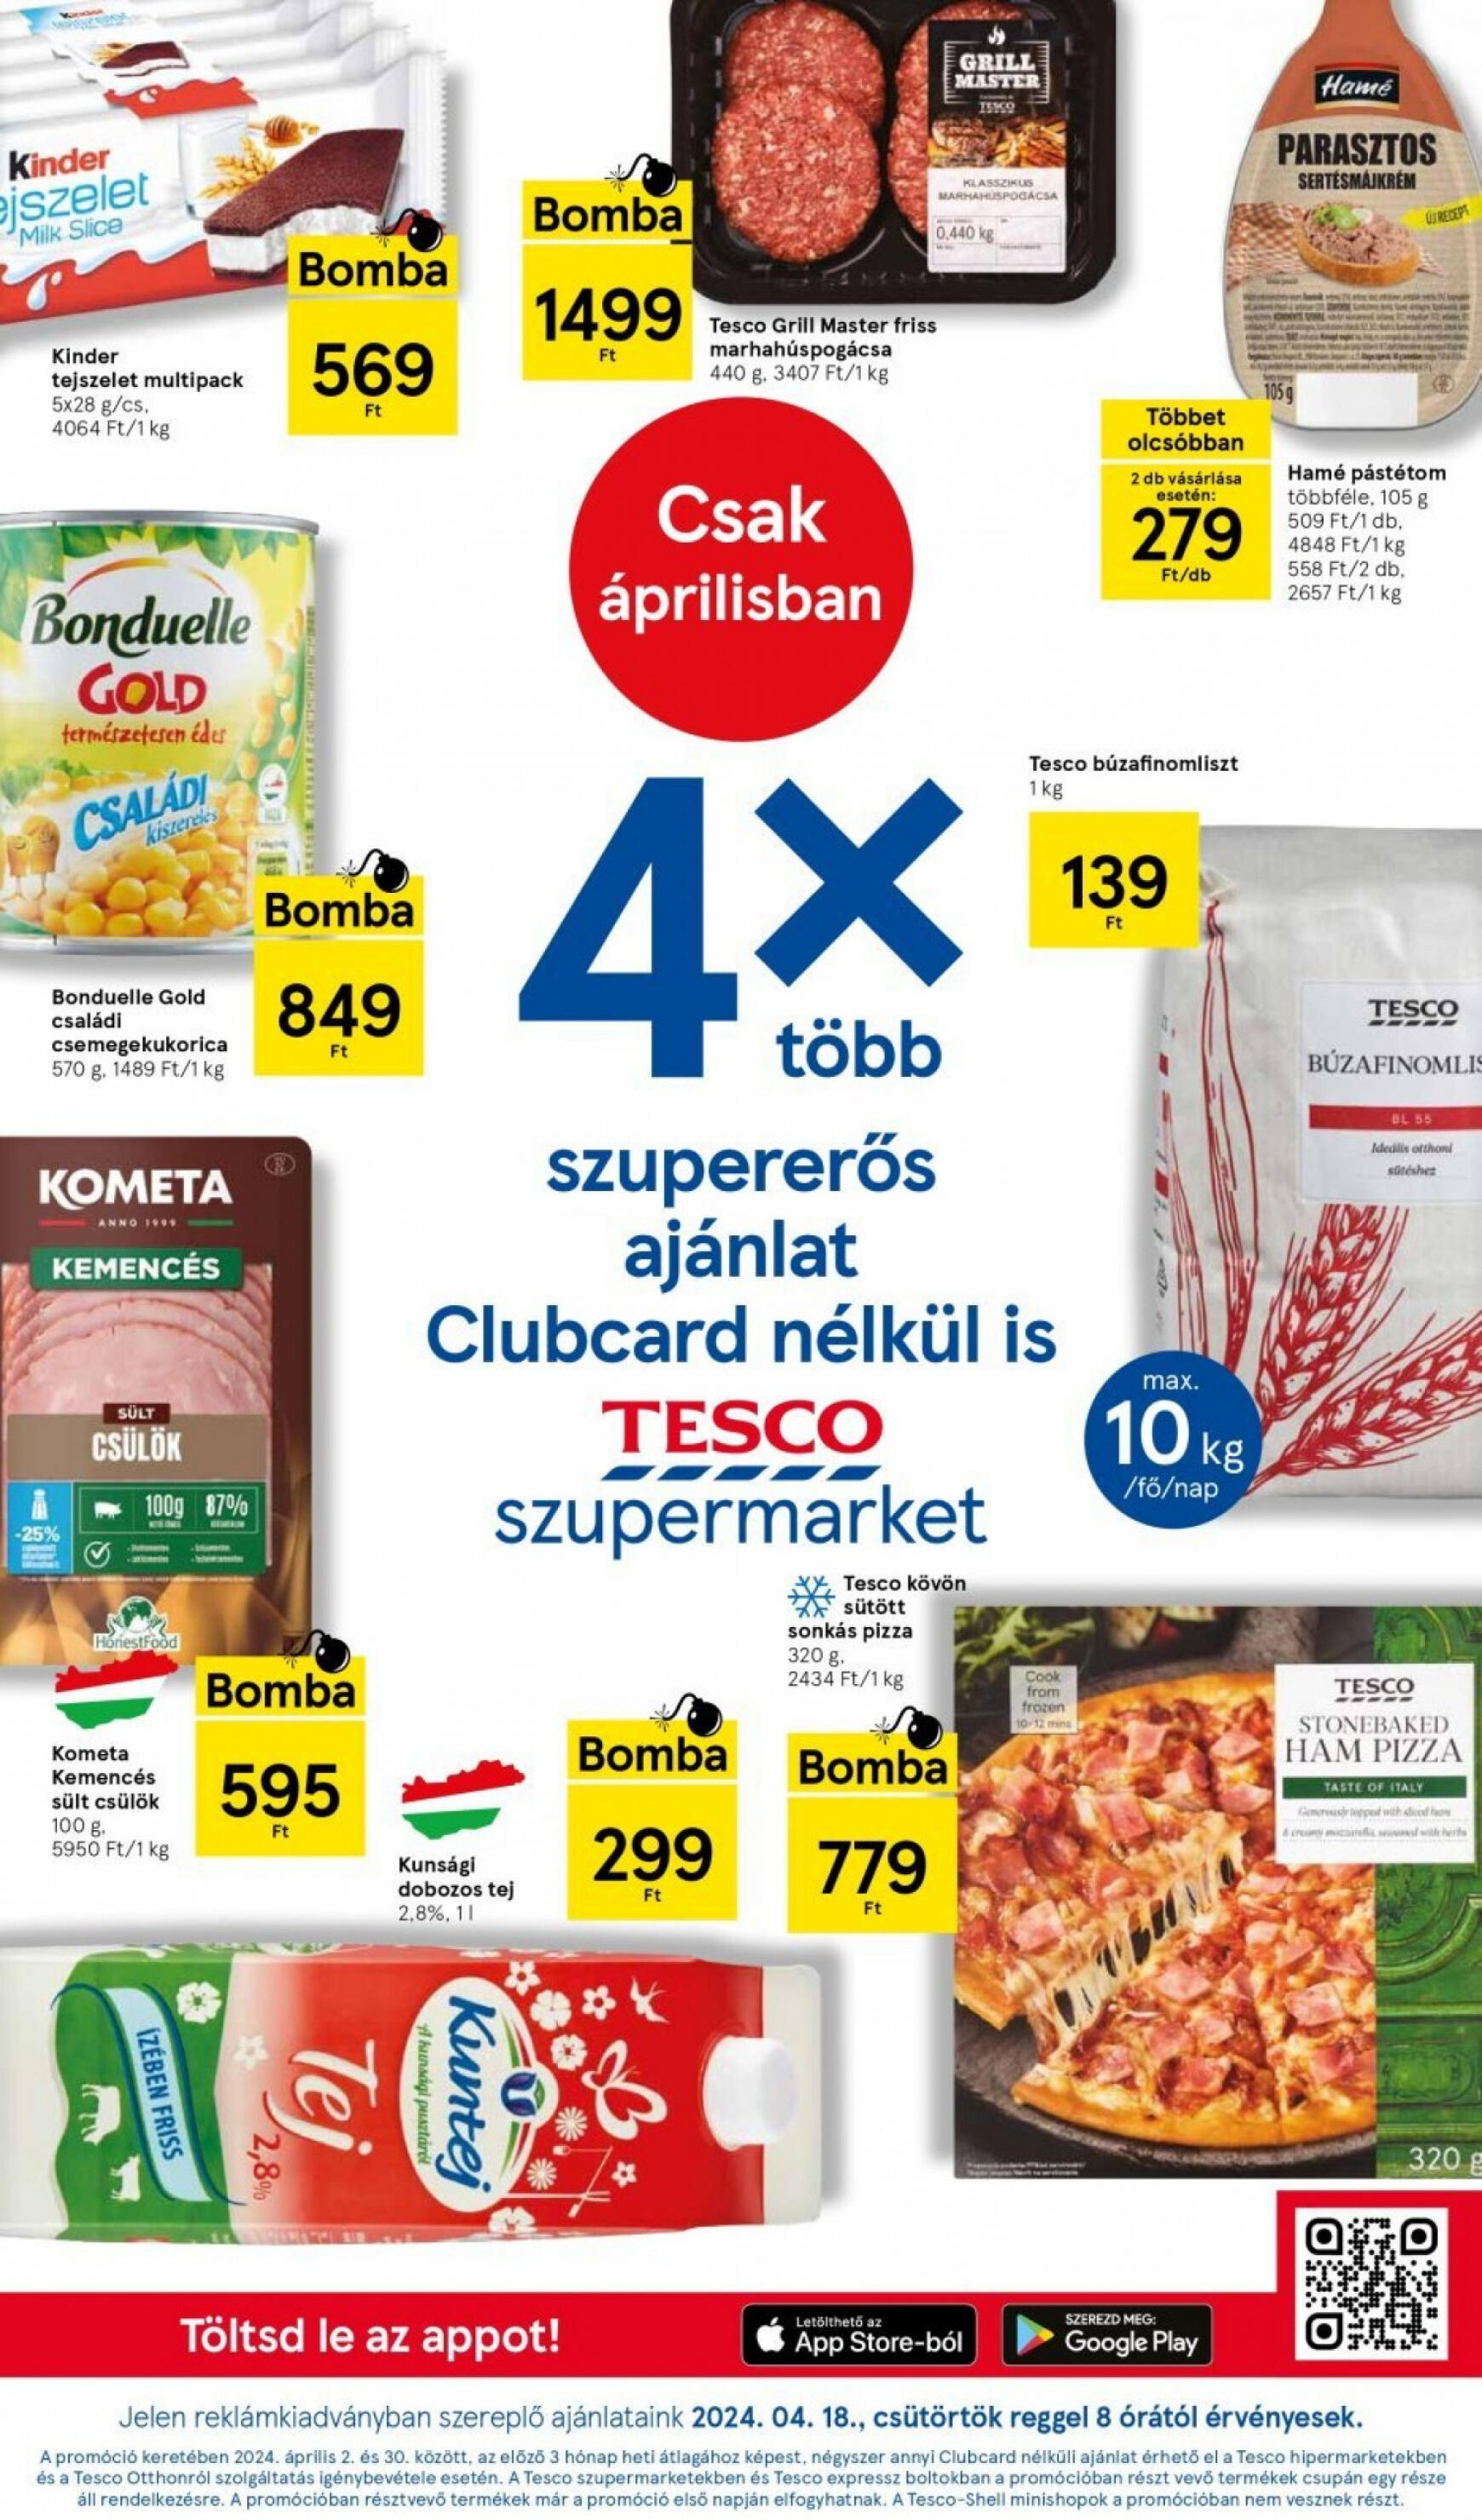 tesco - Aktuális újság Tesco szupermarket 04.18. - 04.24. - page: 1